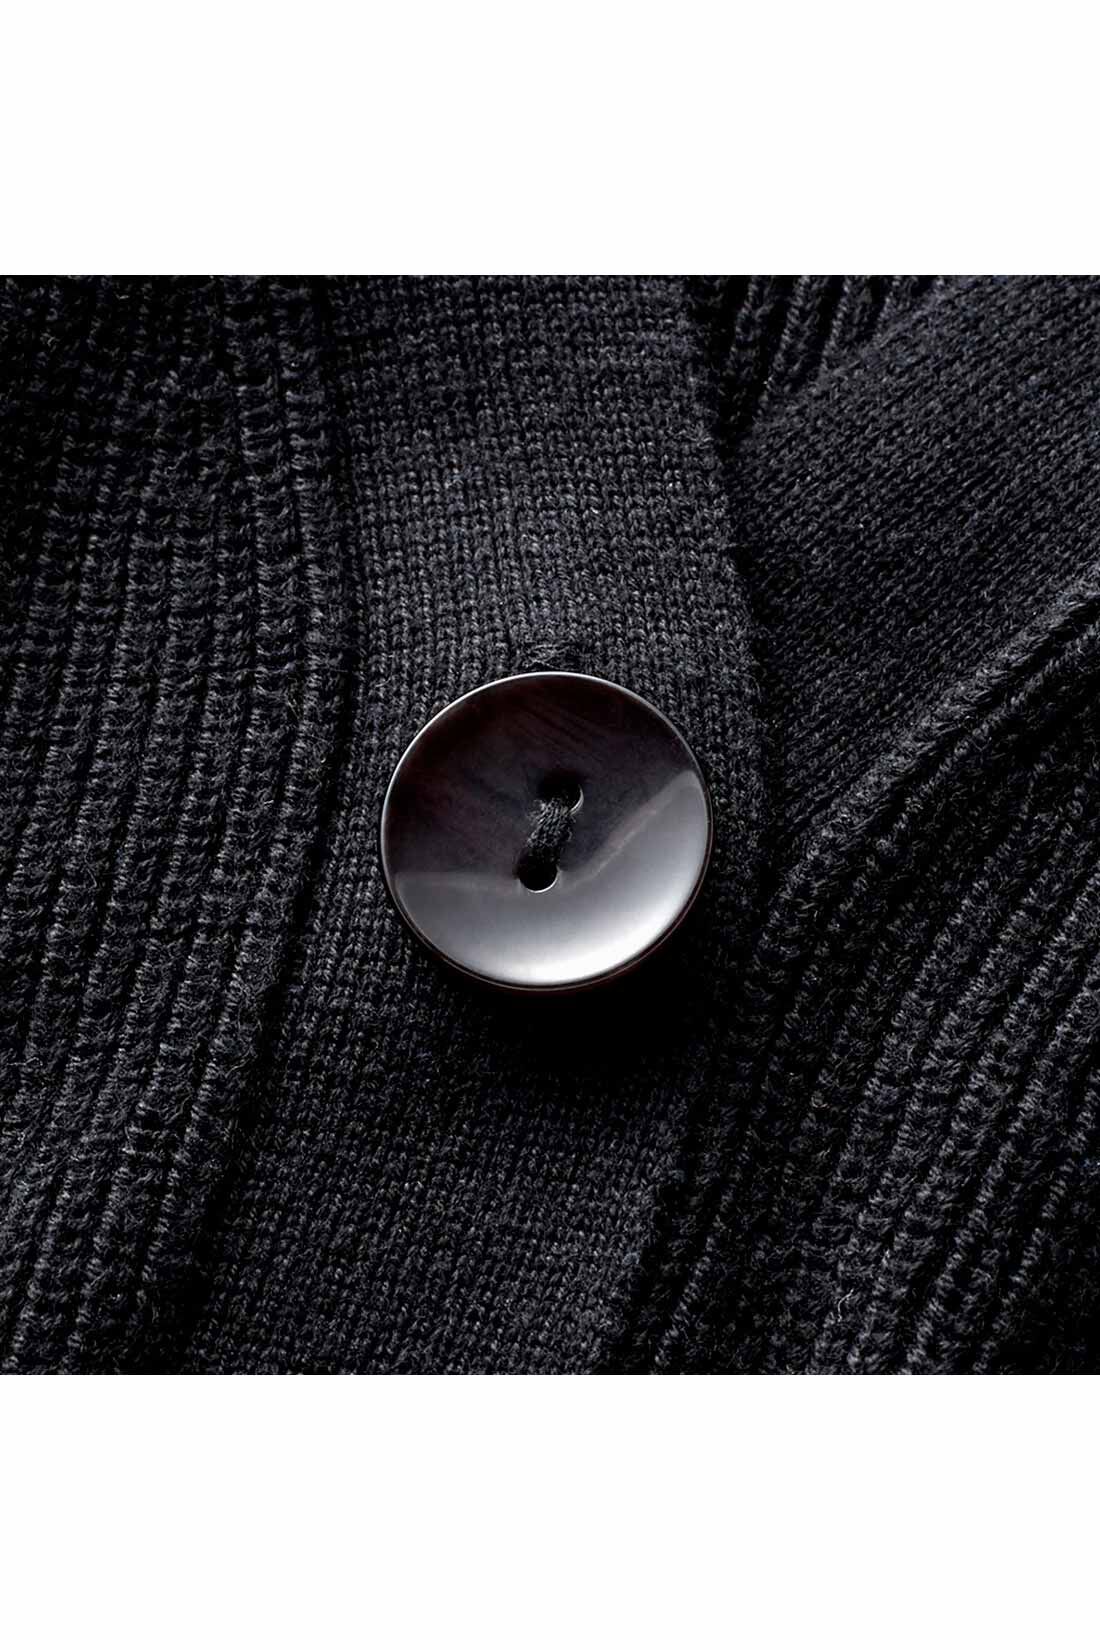 IEDIT|IEDIT[イディット]　大人上品なチェック柄ロングワンピースとカーディガンのこなれコーディネイトセット〈ブラック〉|コットン混カーデは12ゲージのあぜ編みで、ラフなこなれ感を表現。